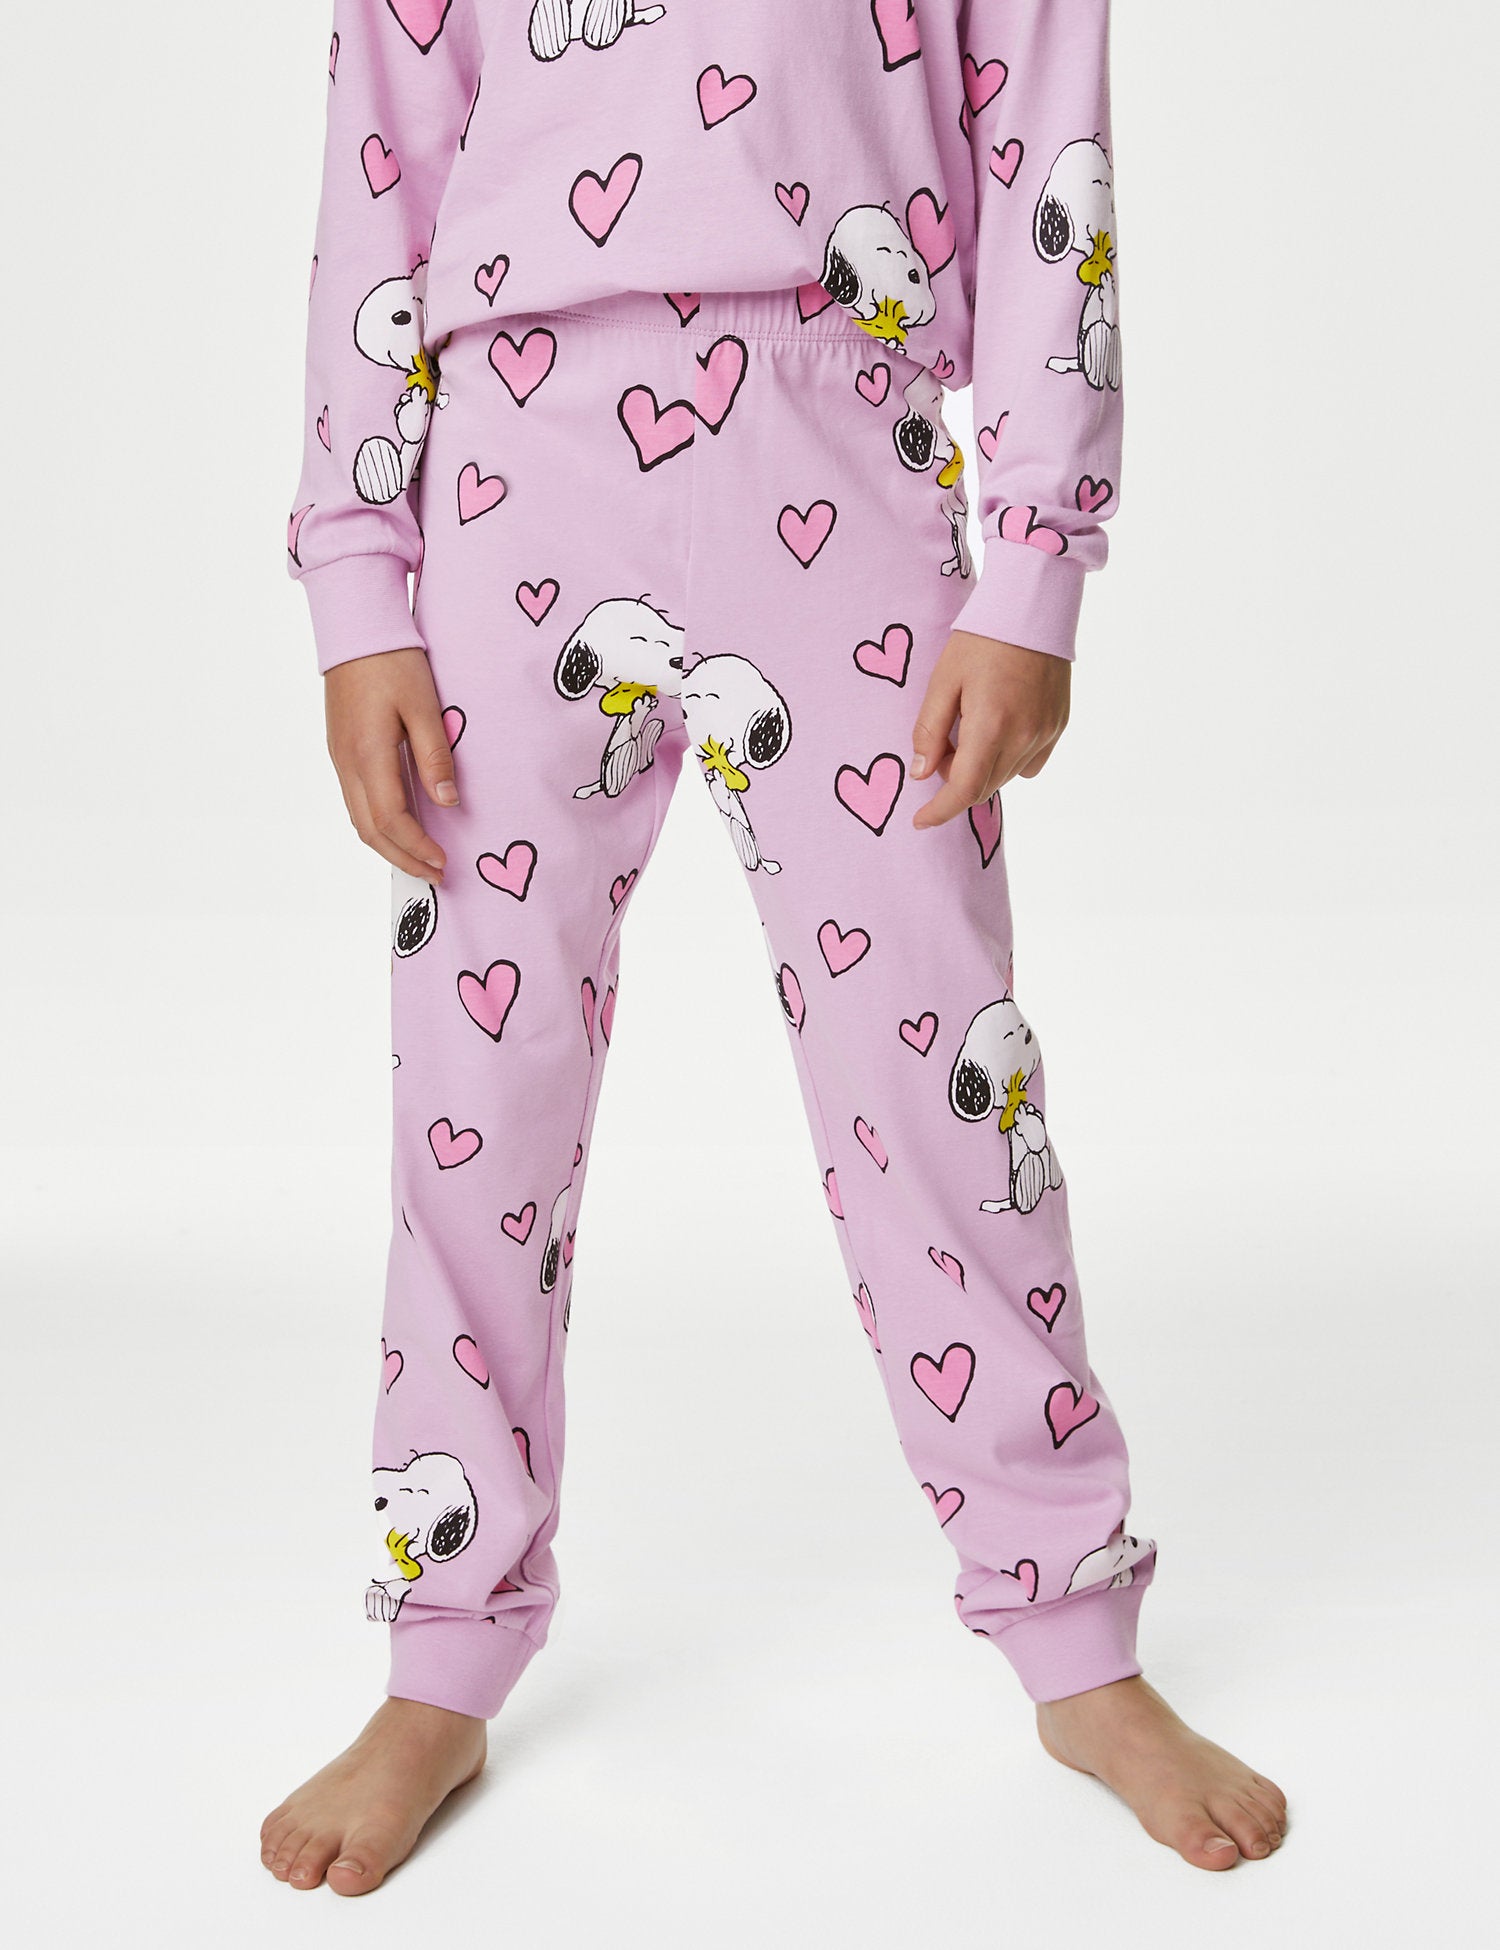 Snoopy Pyjamas